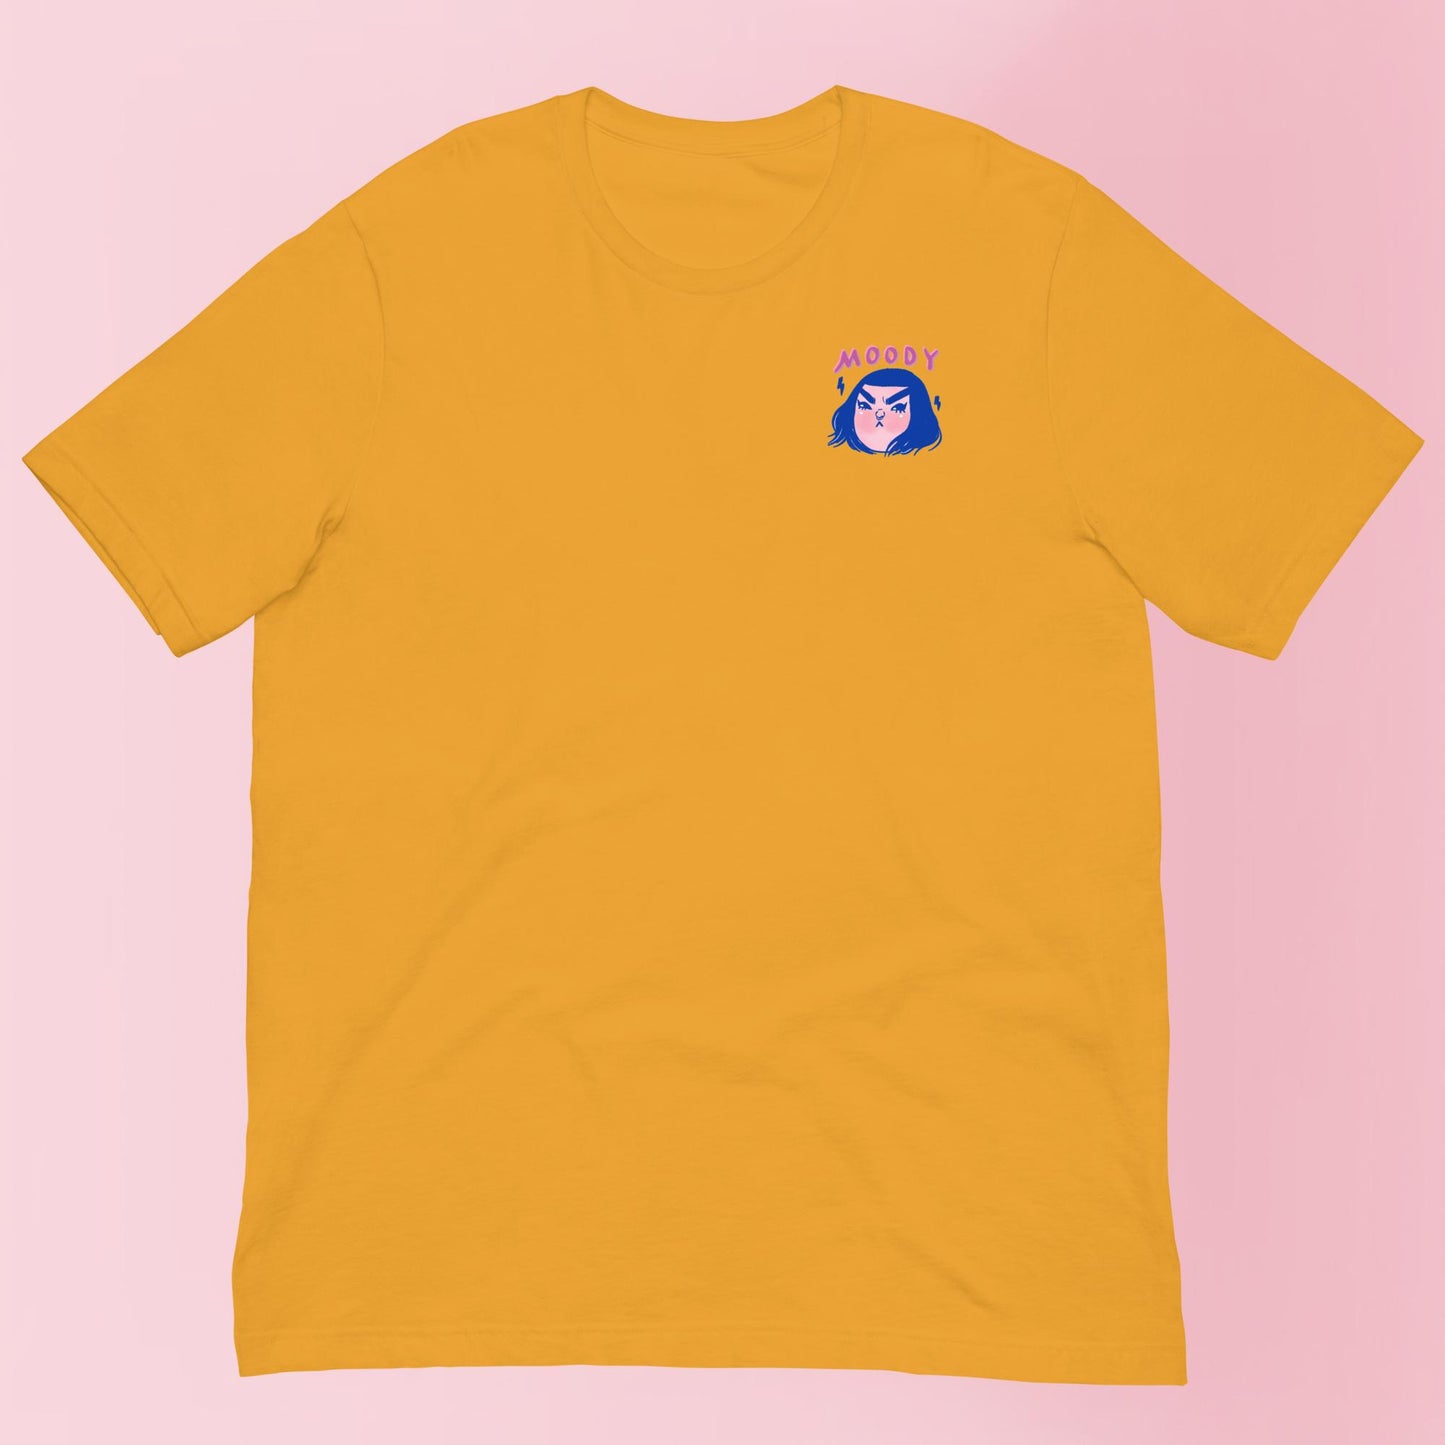 Moody Tude - Unisex Shirt